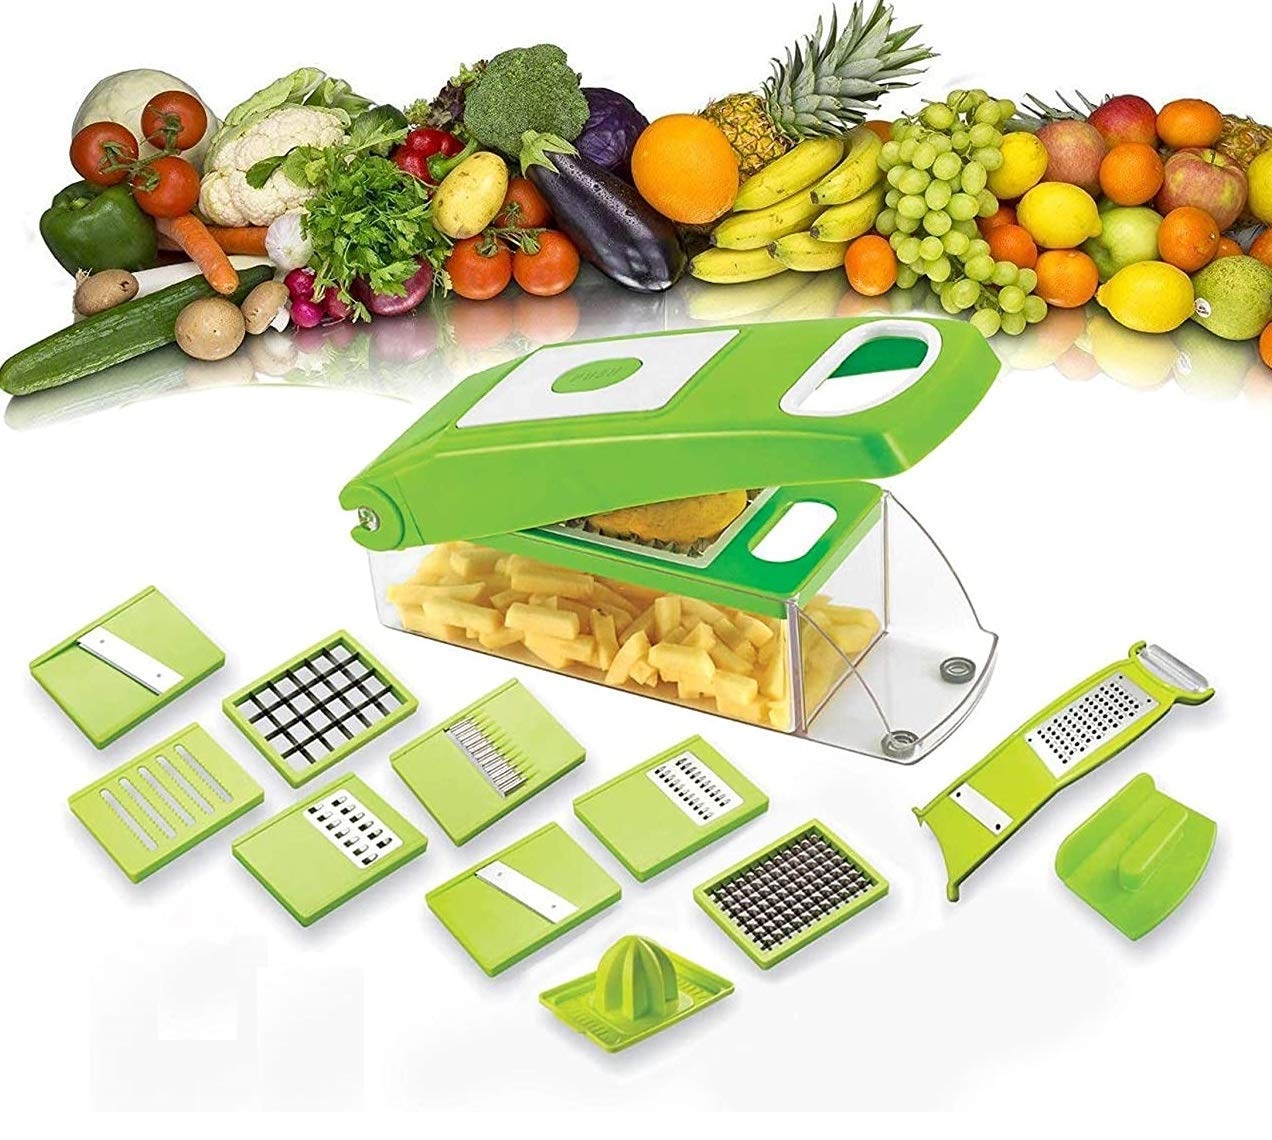 12 in 1 Multi-Purpose Vegetable & Fruit Chopper, Fruit Grater, Slicer Dicer, Chipper, Peeler | Hand Chopper, Cutter